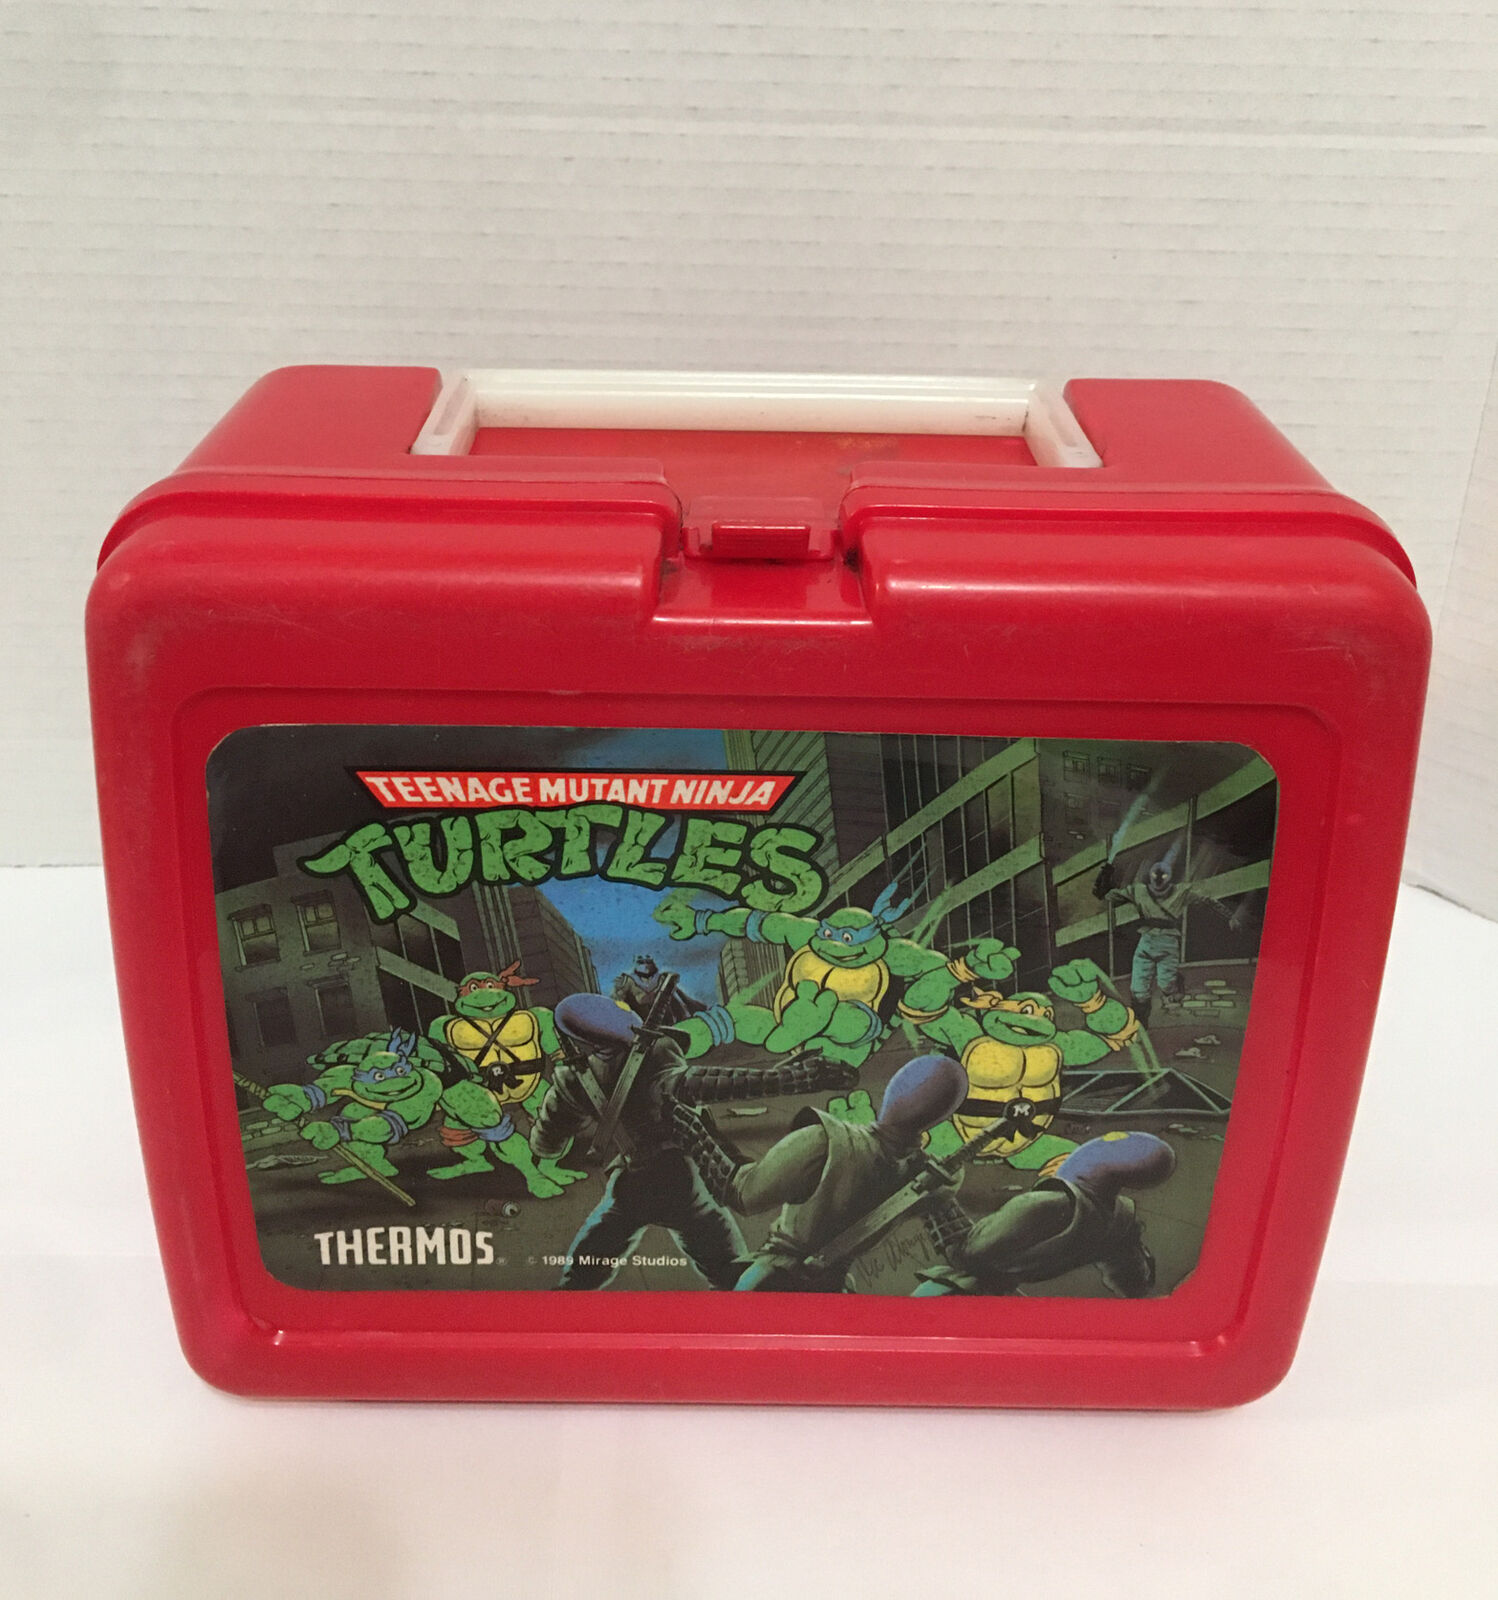 Vintage 1989 TMNT Teenage Mutant Ninja Turtles Plastic Red Lunchbox NO Thermos.